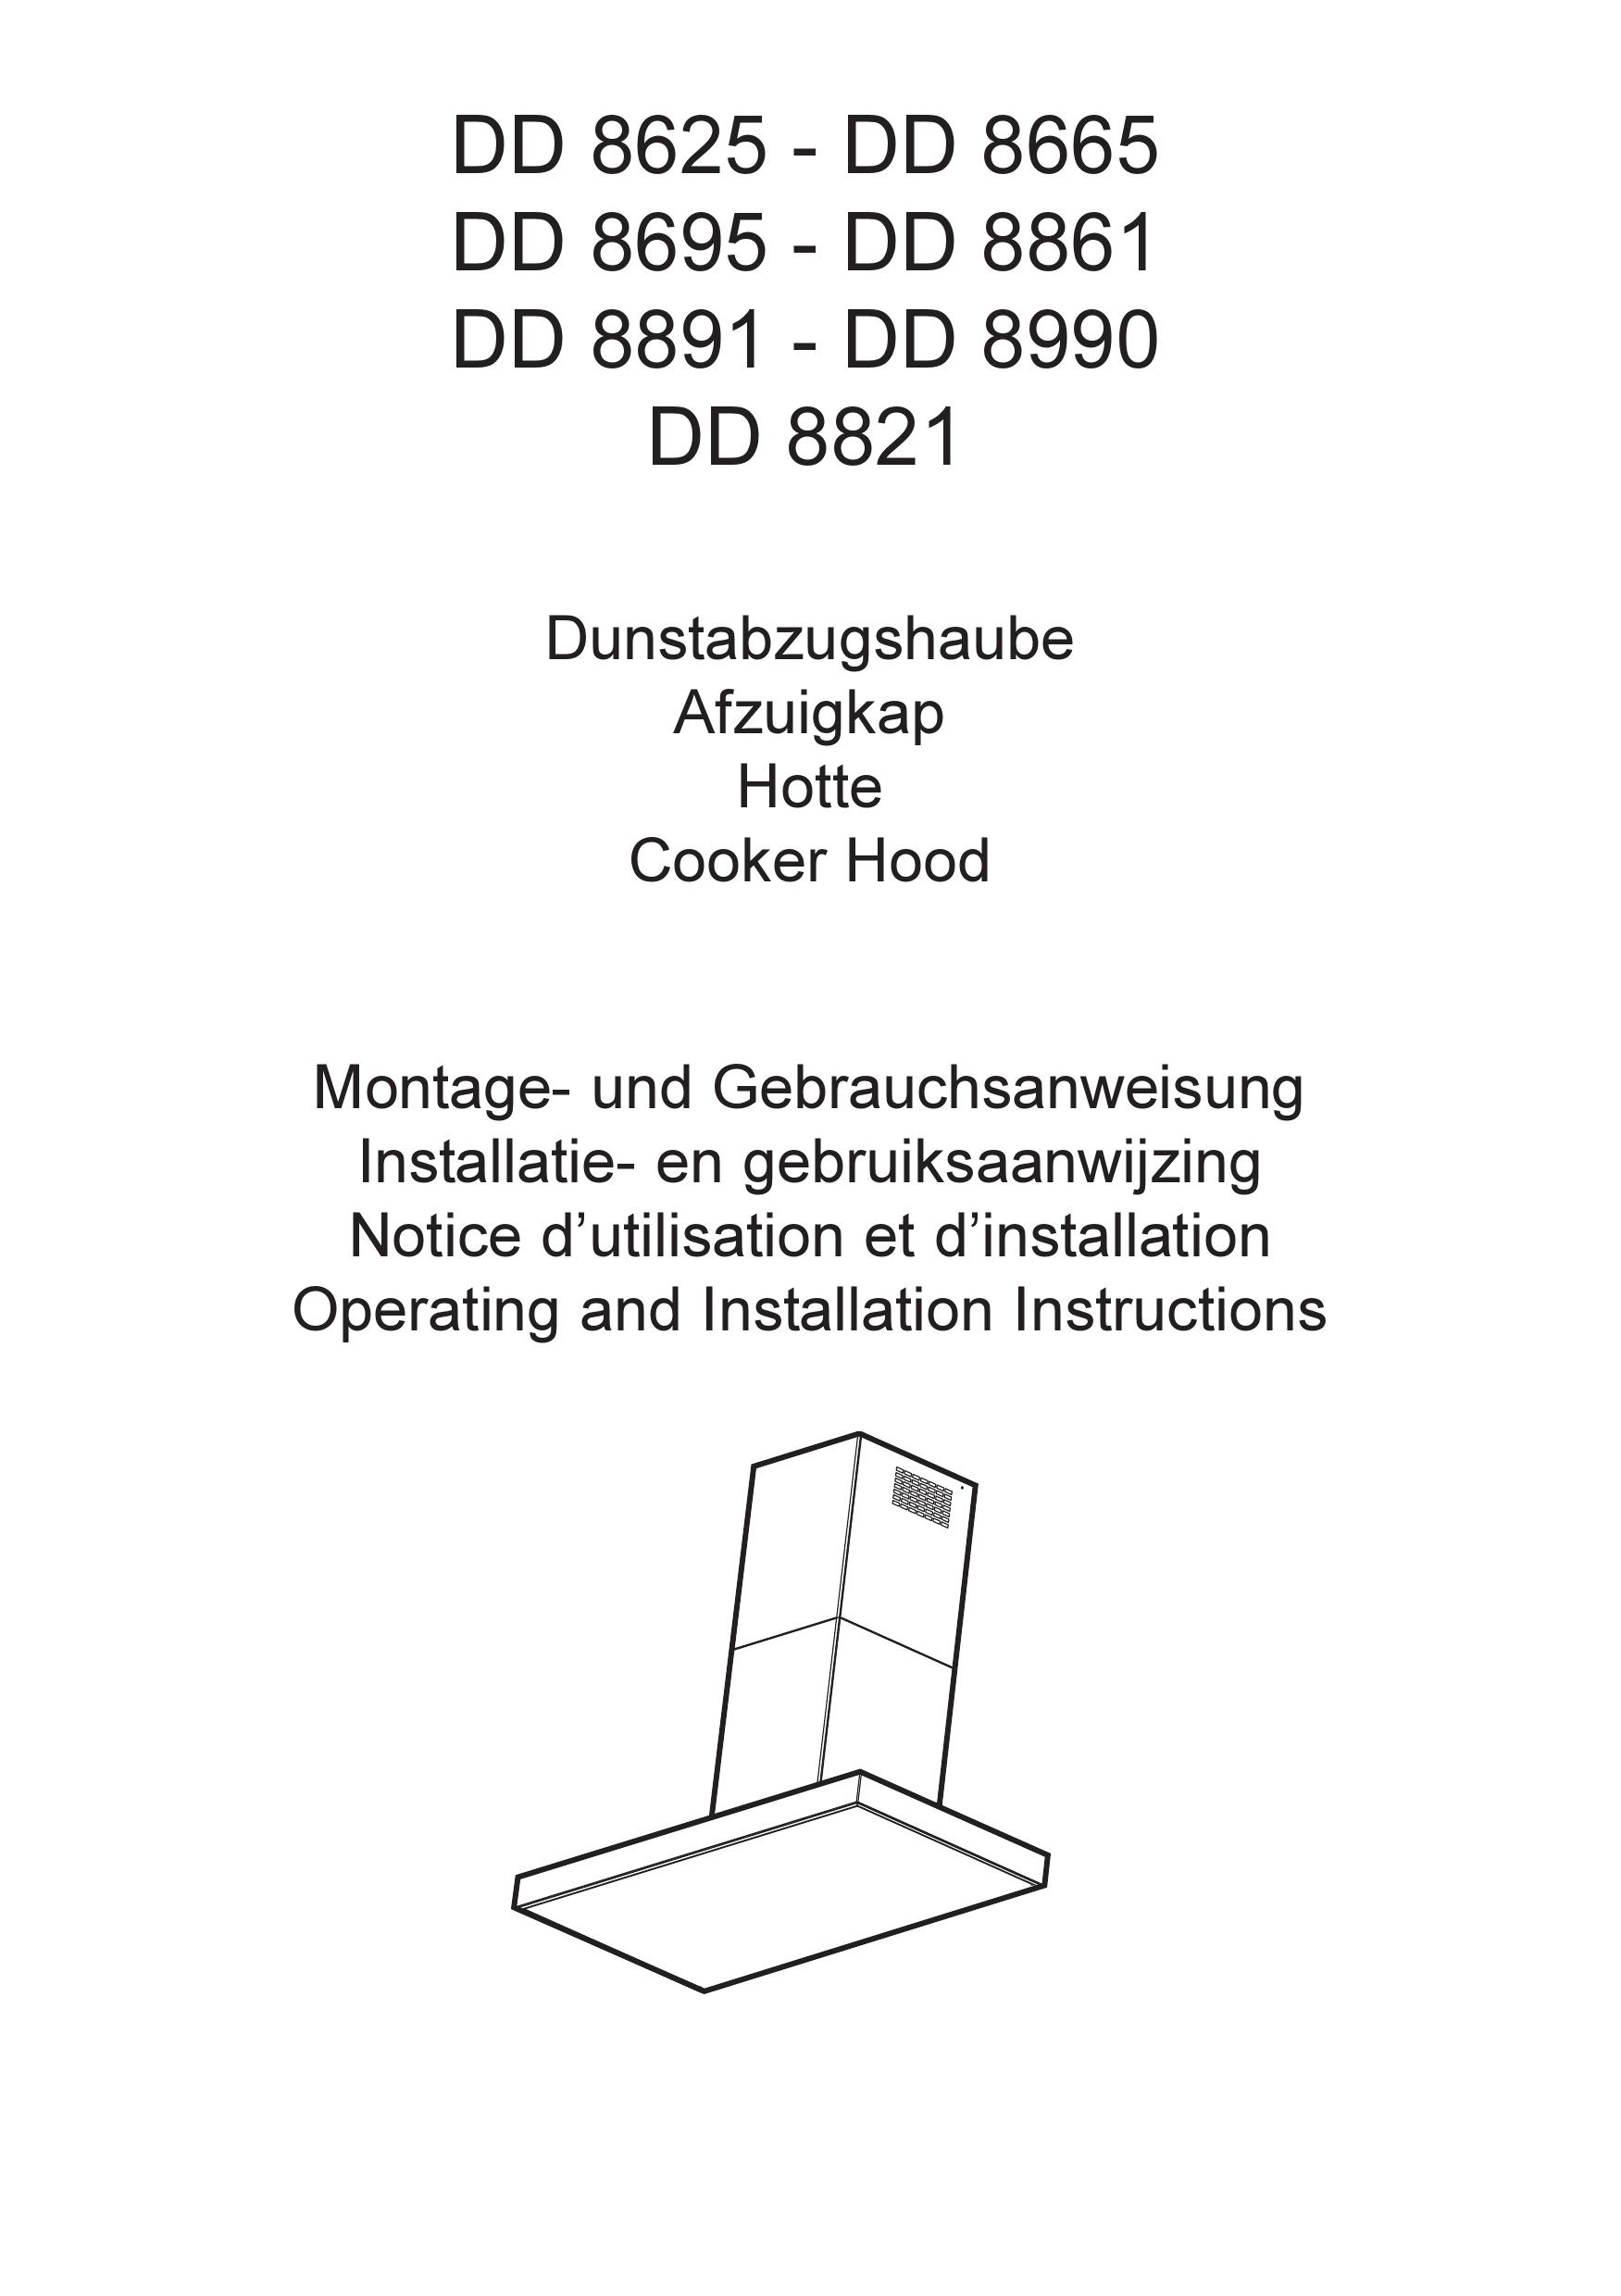 AEG DD 8821 Ventilation Hood User Manual